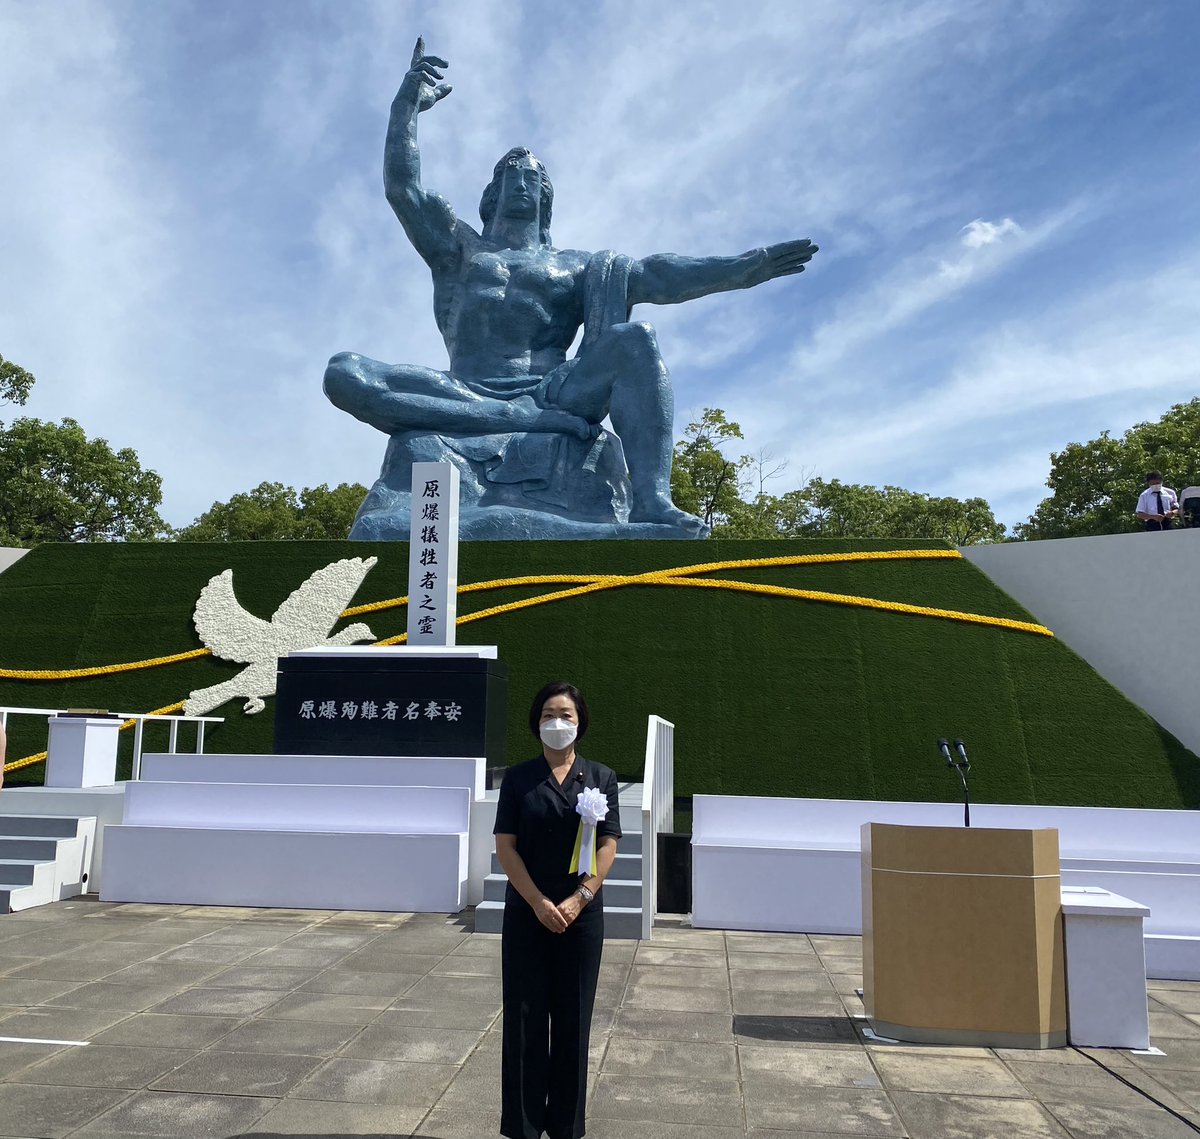 8月9日。長崎の平和祈念式典に参列し、れいわ新選組を代表して献花させていただきます。77年前の朝も、このような空が広がっていたのでしょうか。すべての原爆犠牲者の方々へ心から哀悼の誠を捧げます。長崎を、最後の被爆地に。#長崎原爆の日　#れいわ新選組 